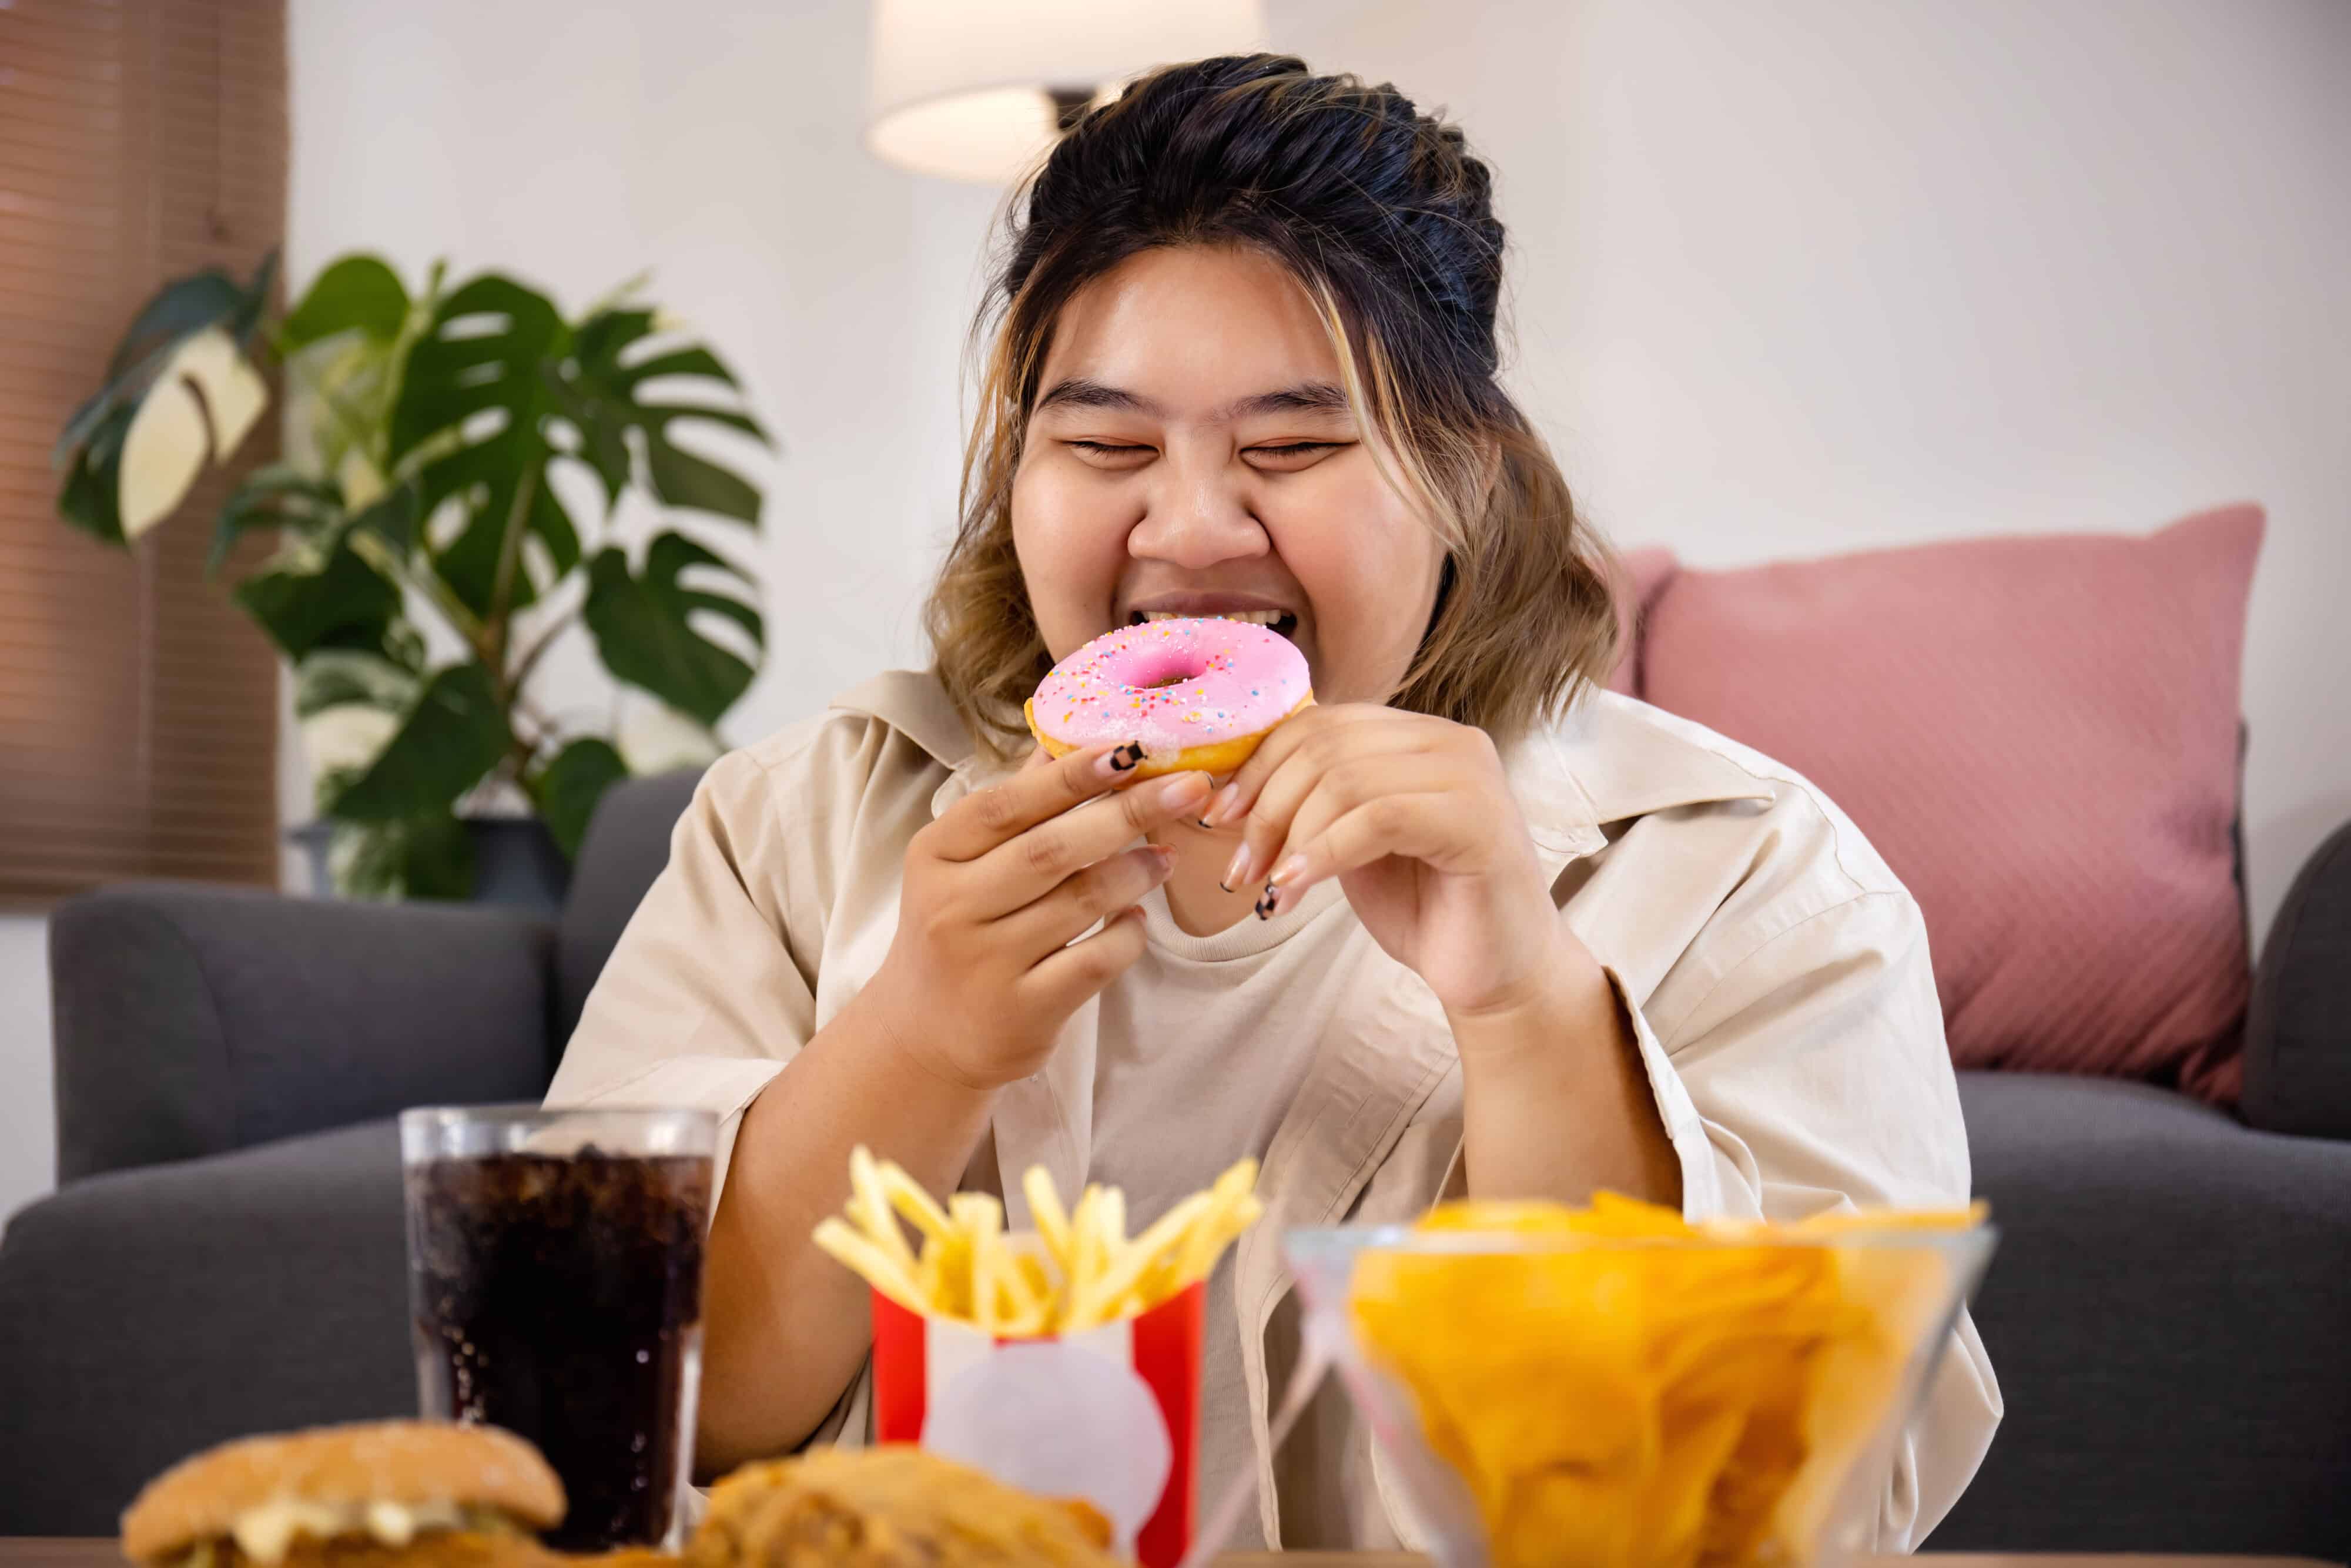 ทำไมคนอ้วนถึงหิวบ่อยกว่าคนผอม